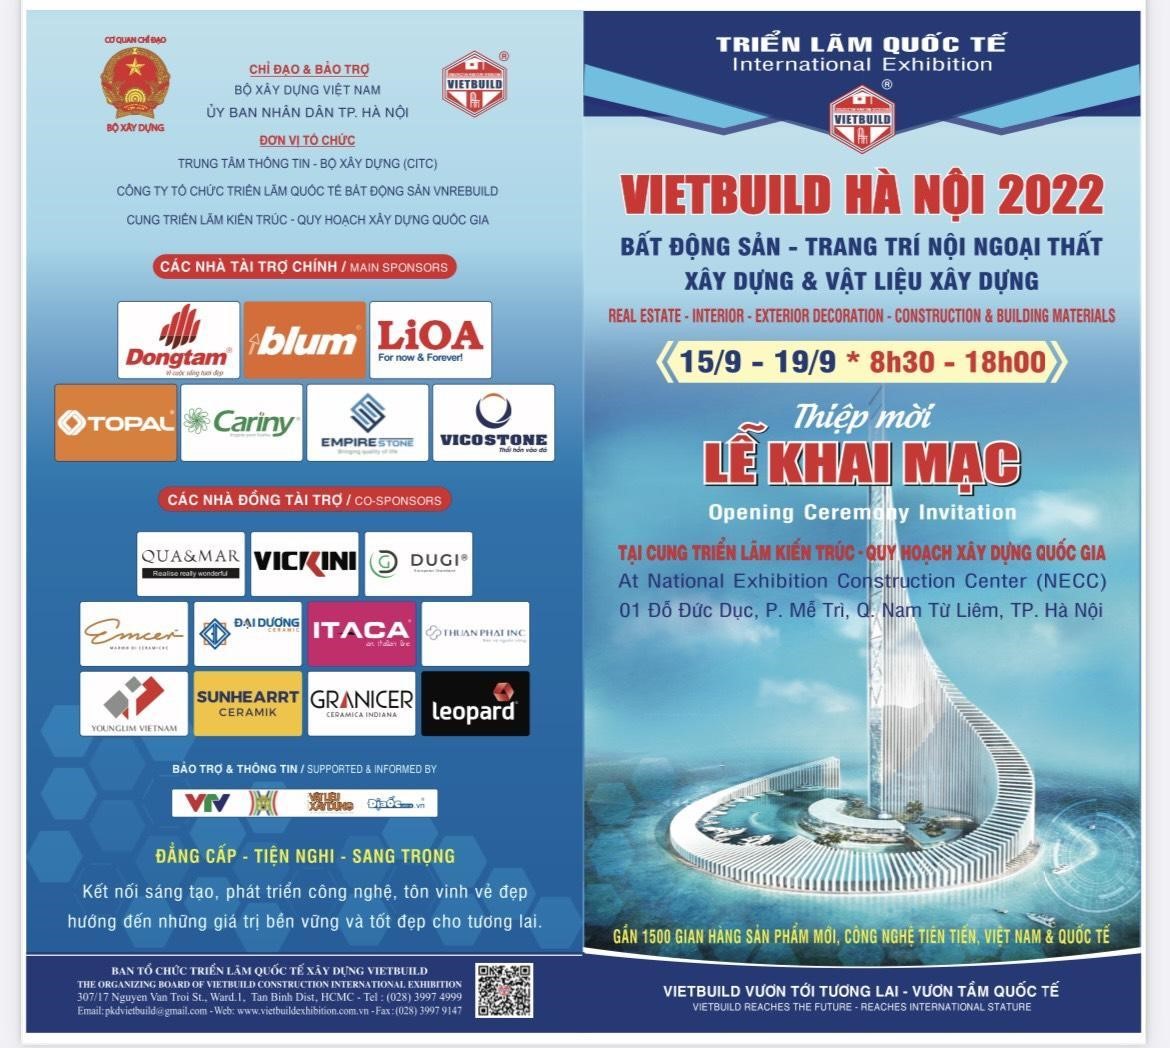 Triển lãm quốc tế - Vietbuild Hà Nội năm 2022